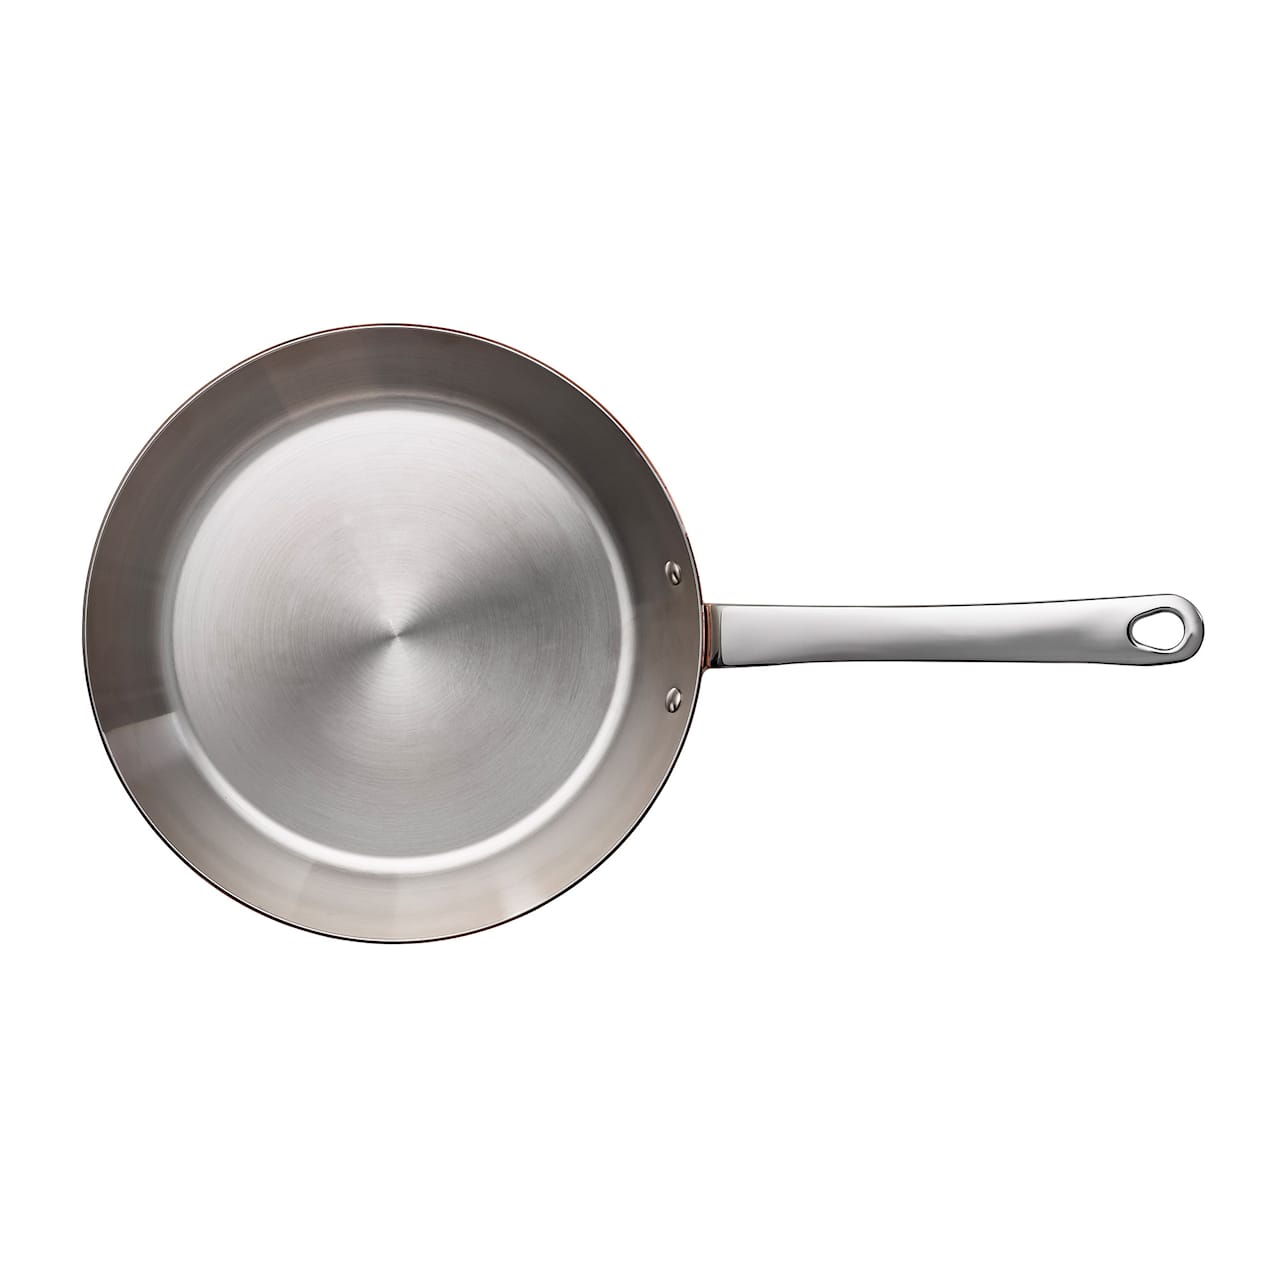 Maitre D' Frying Pan Copper For Induction - 24 cm